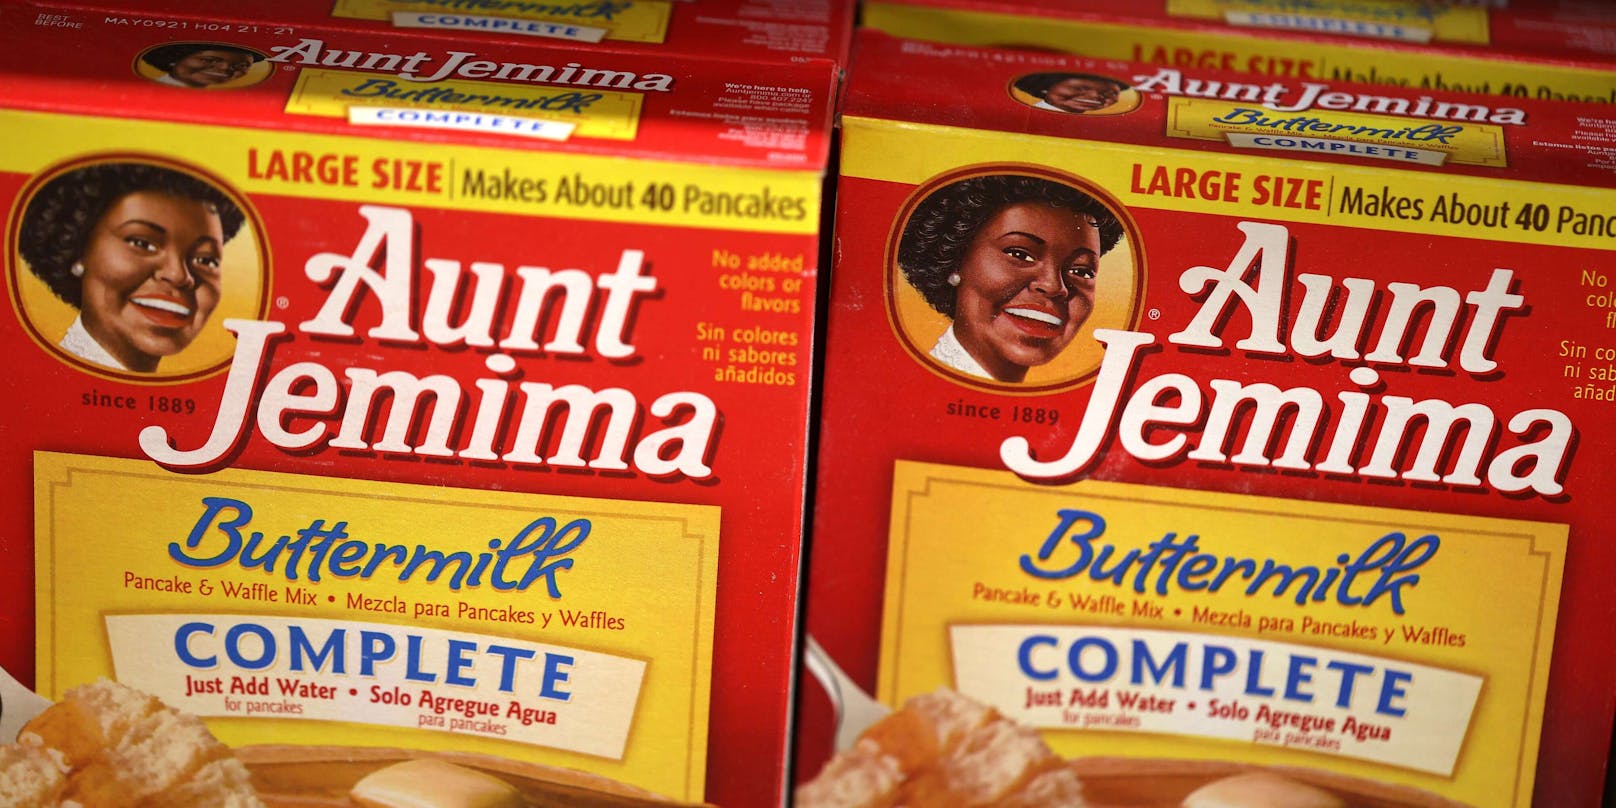 "Aunt Jemina" geht mit Jahresende in "Pension"